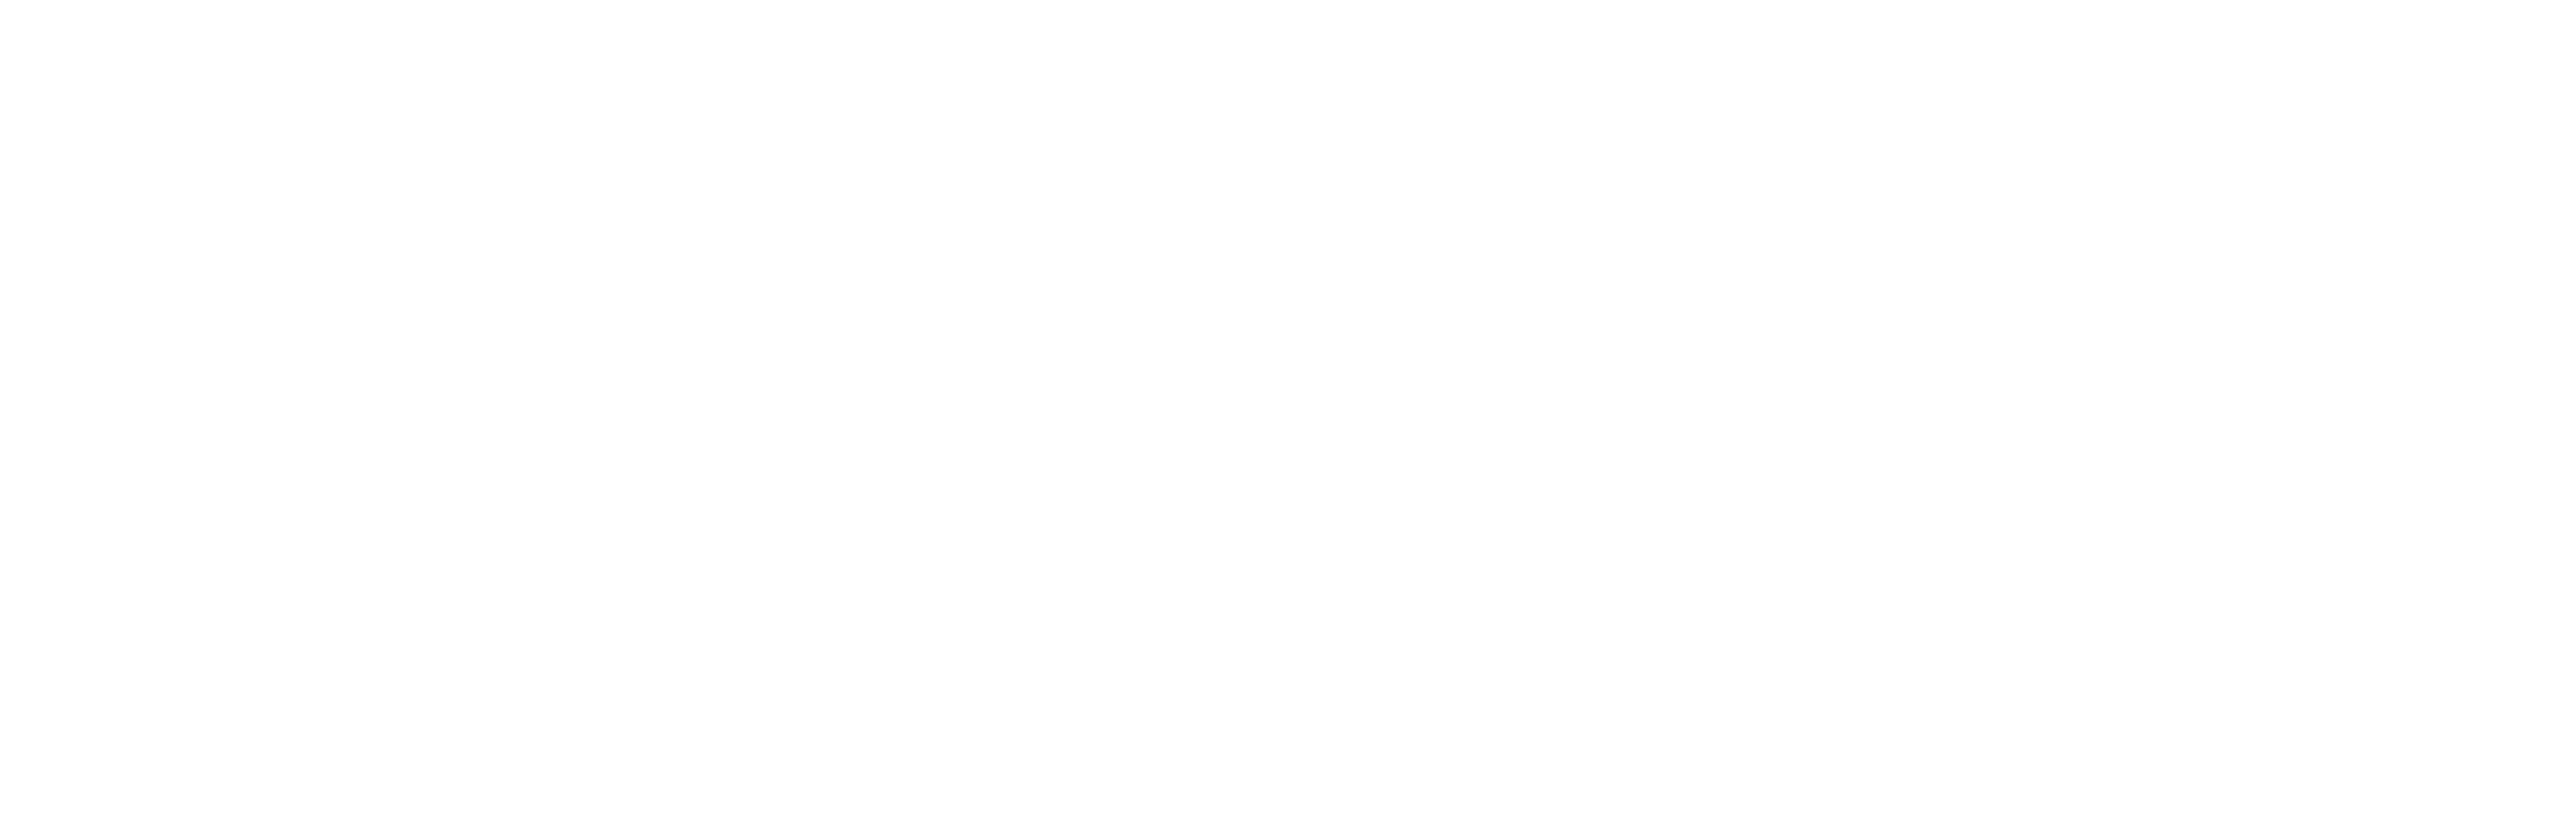 AniCura Vet's Avinguda Hospital Veterinari logo